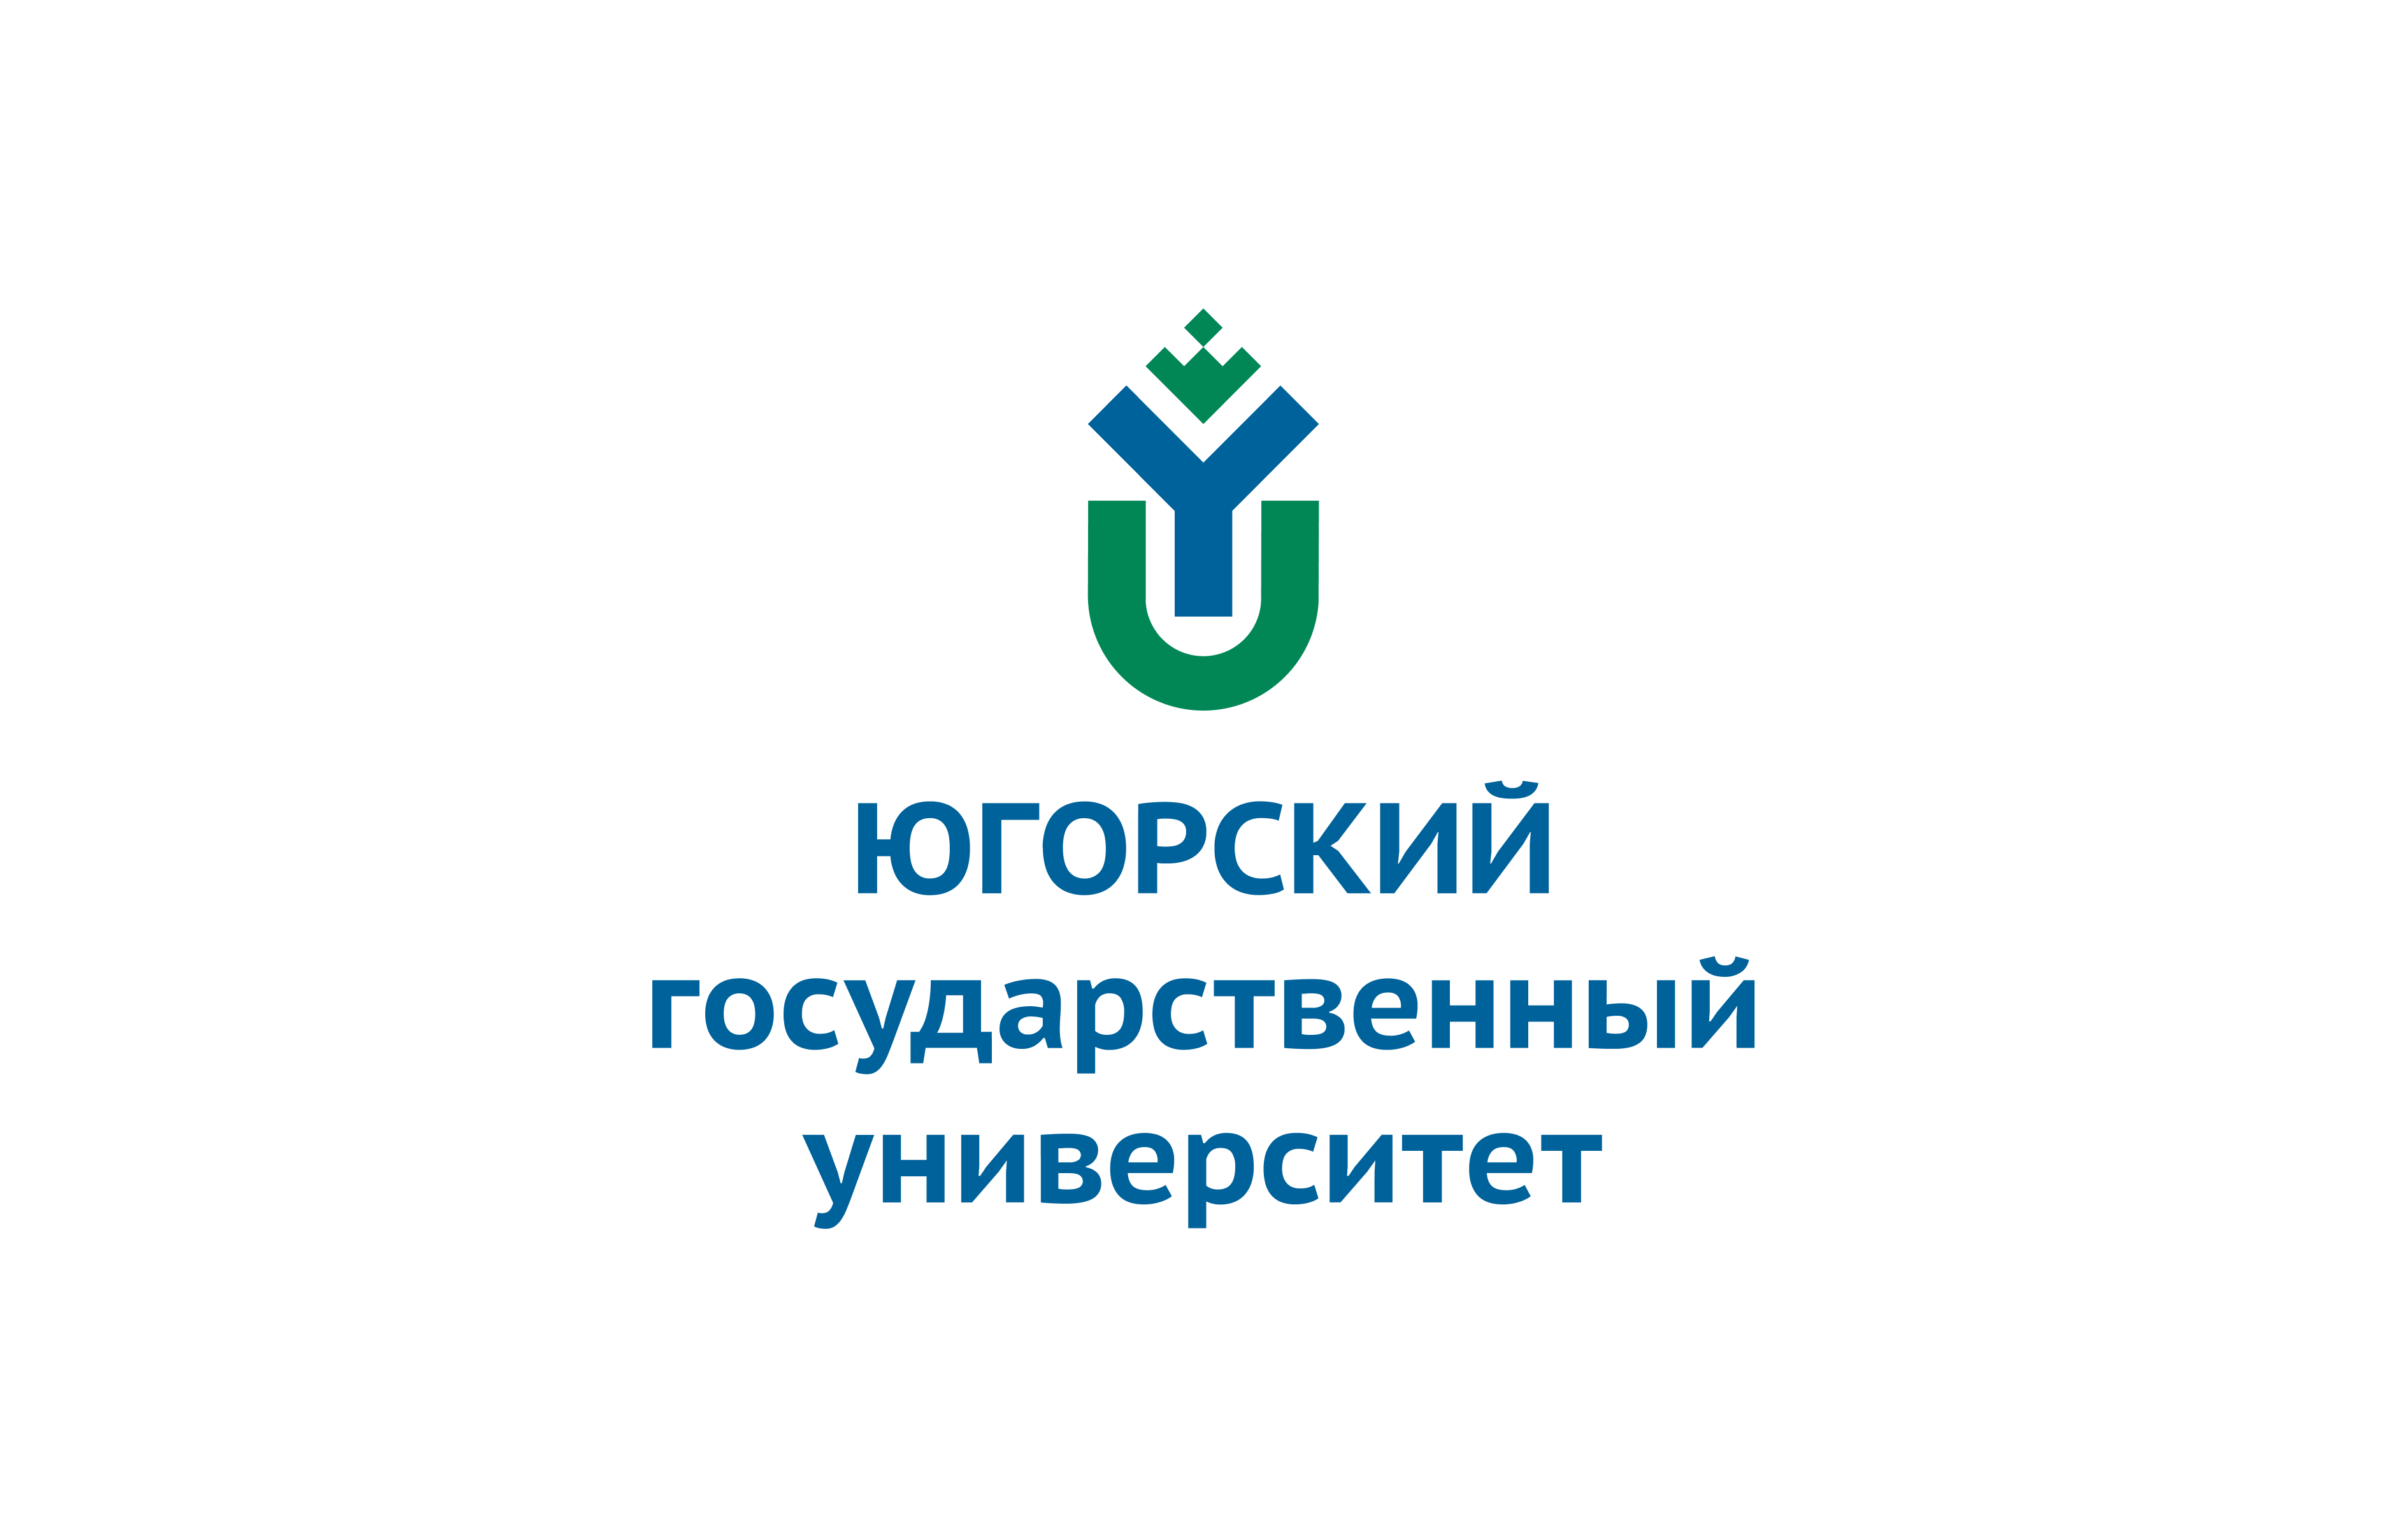 ФГБОУ ВО «Югорский государственный университет» предлагает обучение по IT специальностям.